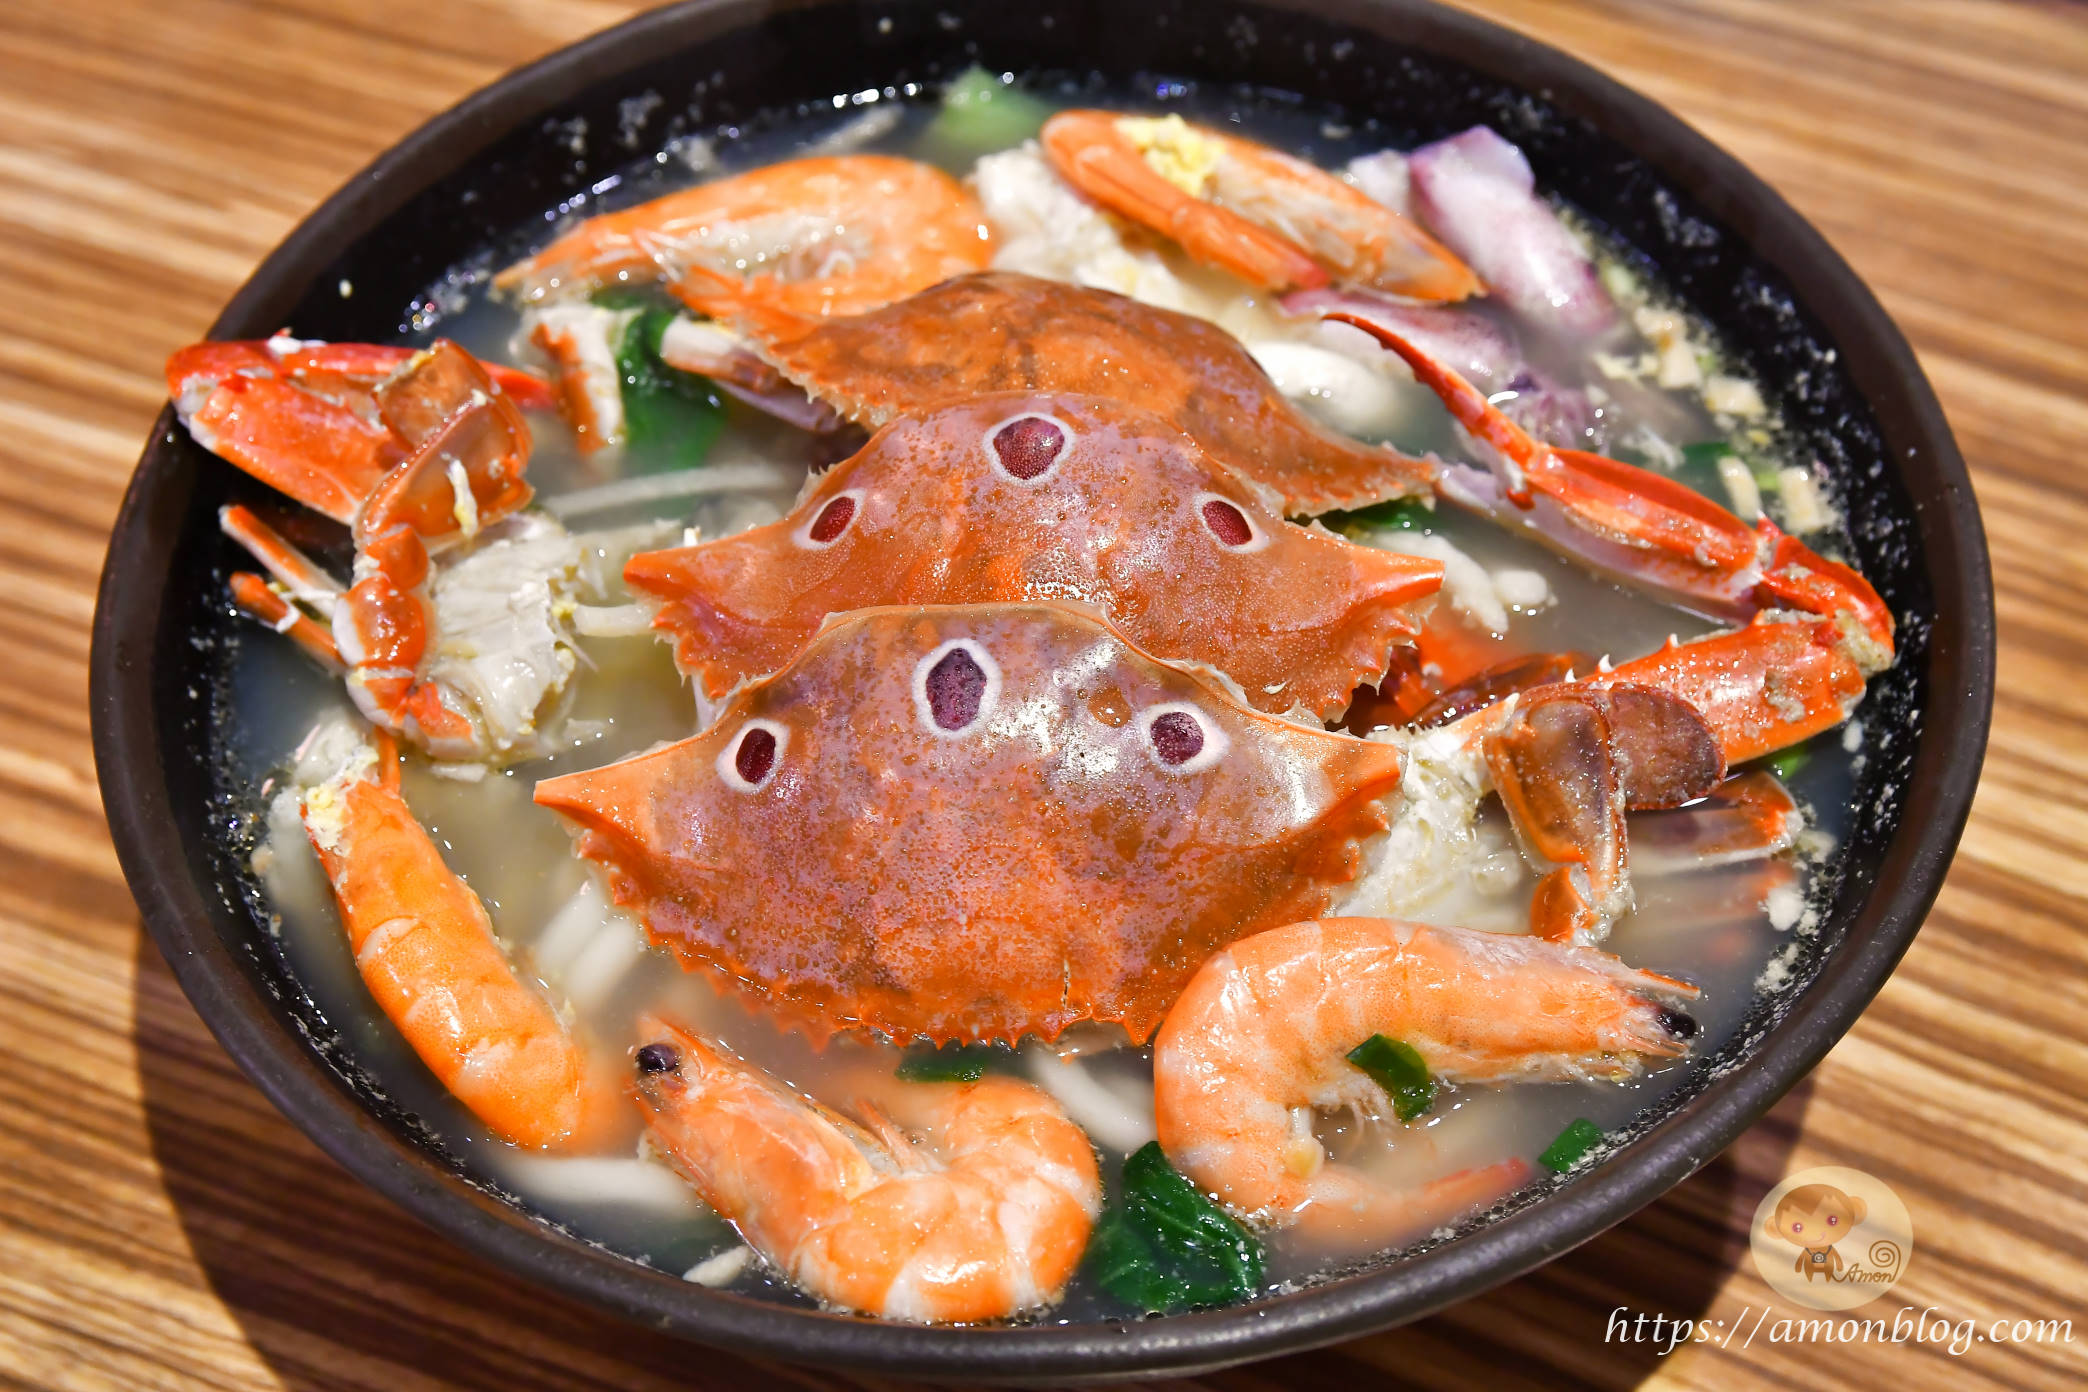 今日熱門文章：大碗螃蟹~金山老街必吃美食，用三隻螃蟹及超多海鮮煮超浮誇海鮮粥